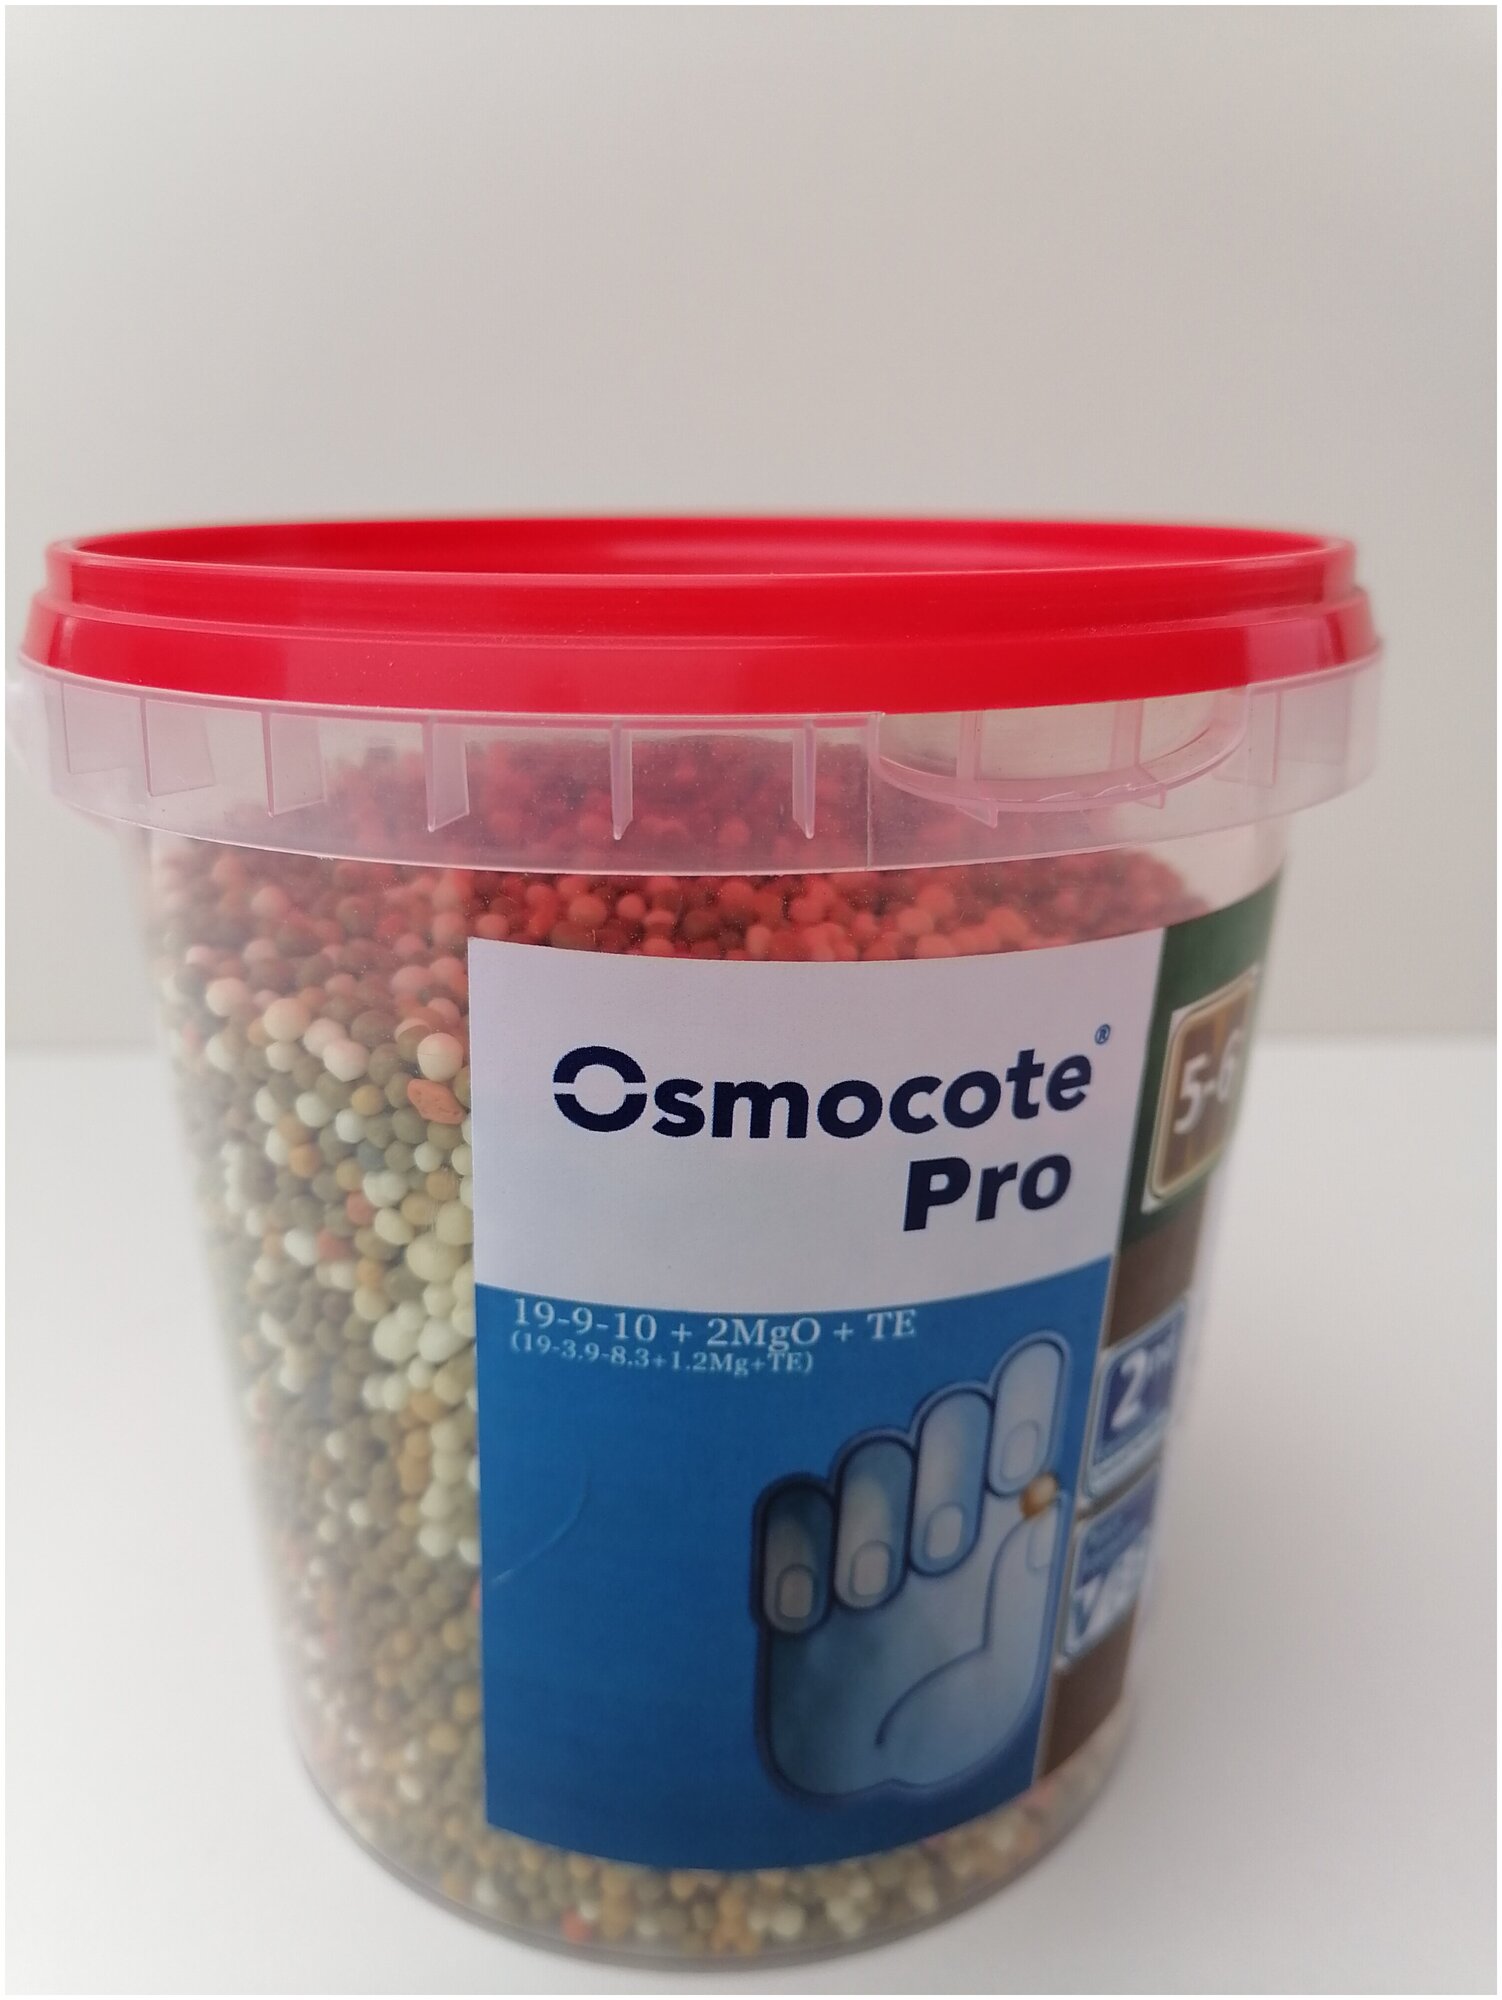 Осмокот Про (Osmocote), 5-6 мес., гранулированные удобрения пролонгированного действия, упаковка = 1кг (фасовка). - фотография № 4